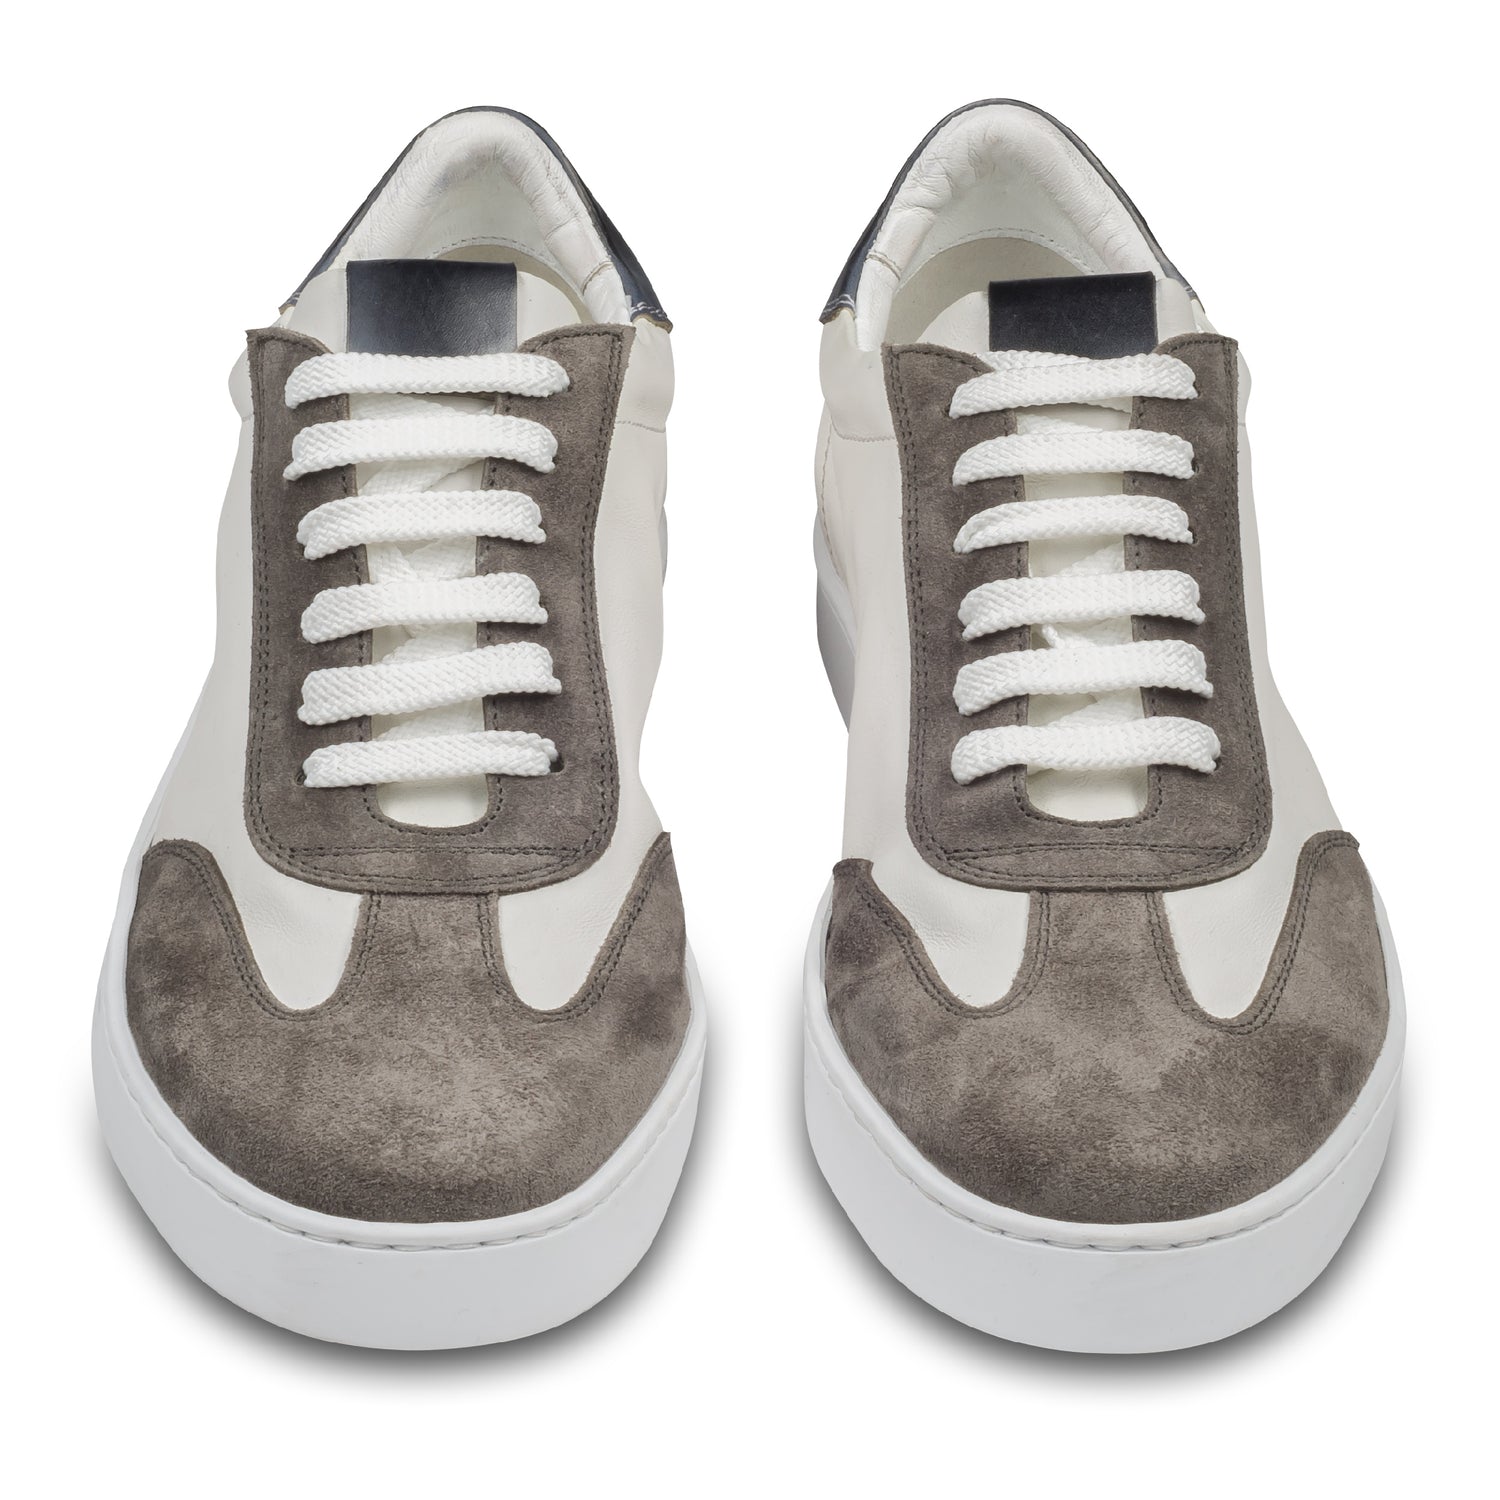 BRECOS –Herren Leder Sneaker in weiß, mit grauem Veloursleder an der Spitze und blauer Ferse, Durchgenäht. Paarweise Ansicht von vorne. Bei Sisento.